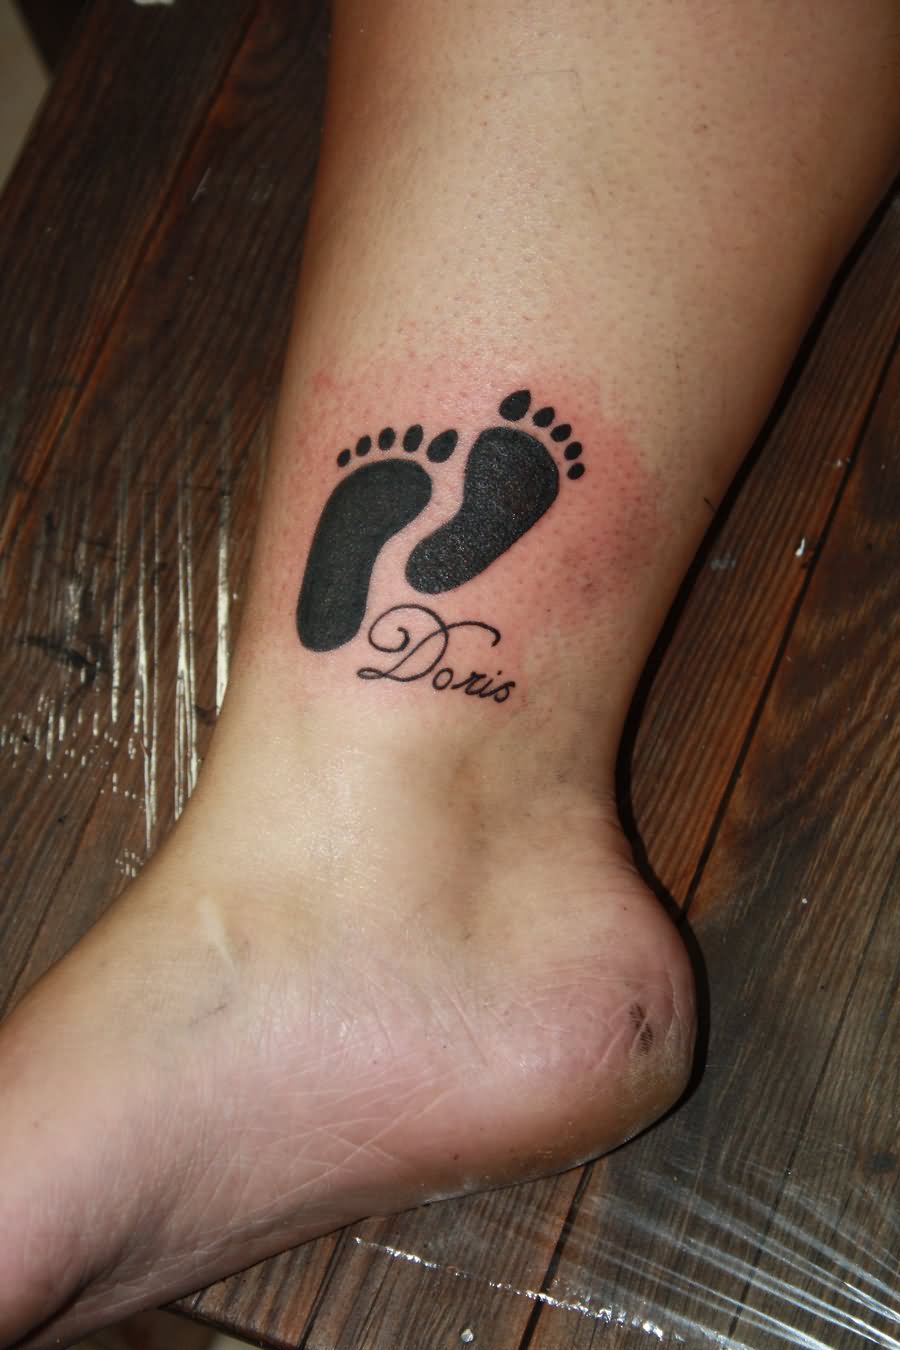 Doris - Black Feet Print Tattoo On Leg